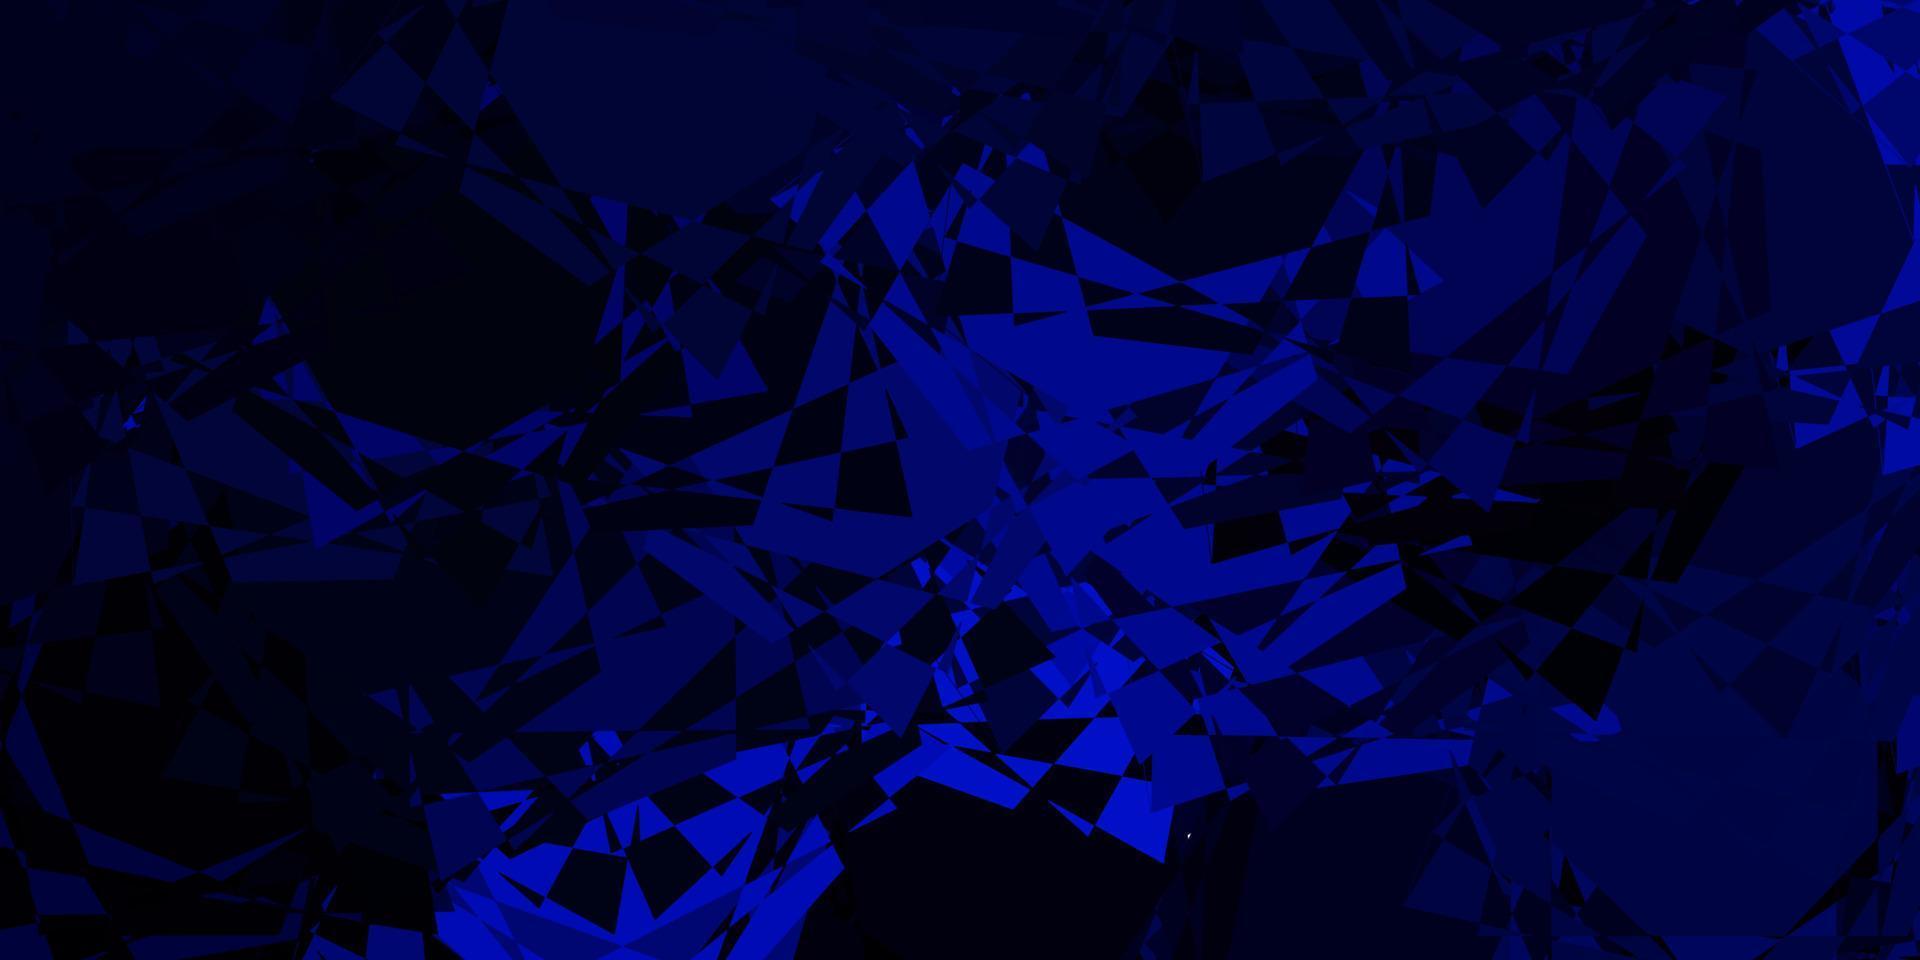 mise en page de vecteur bleu foncé avec des formes triangulaires.